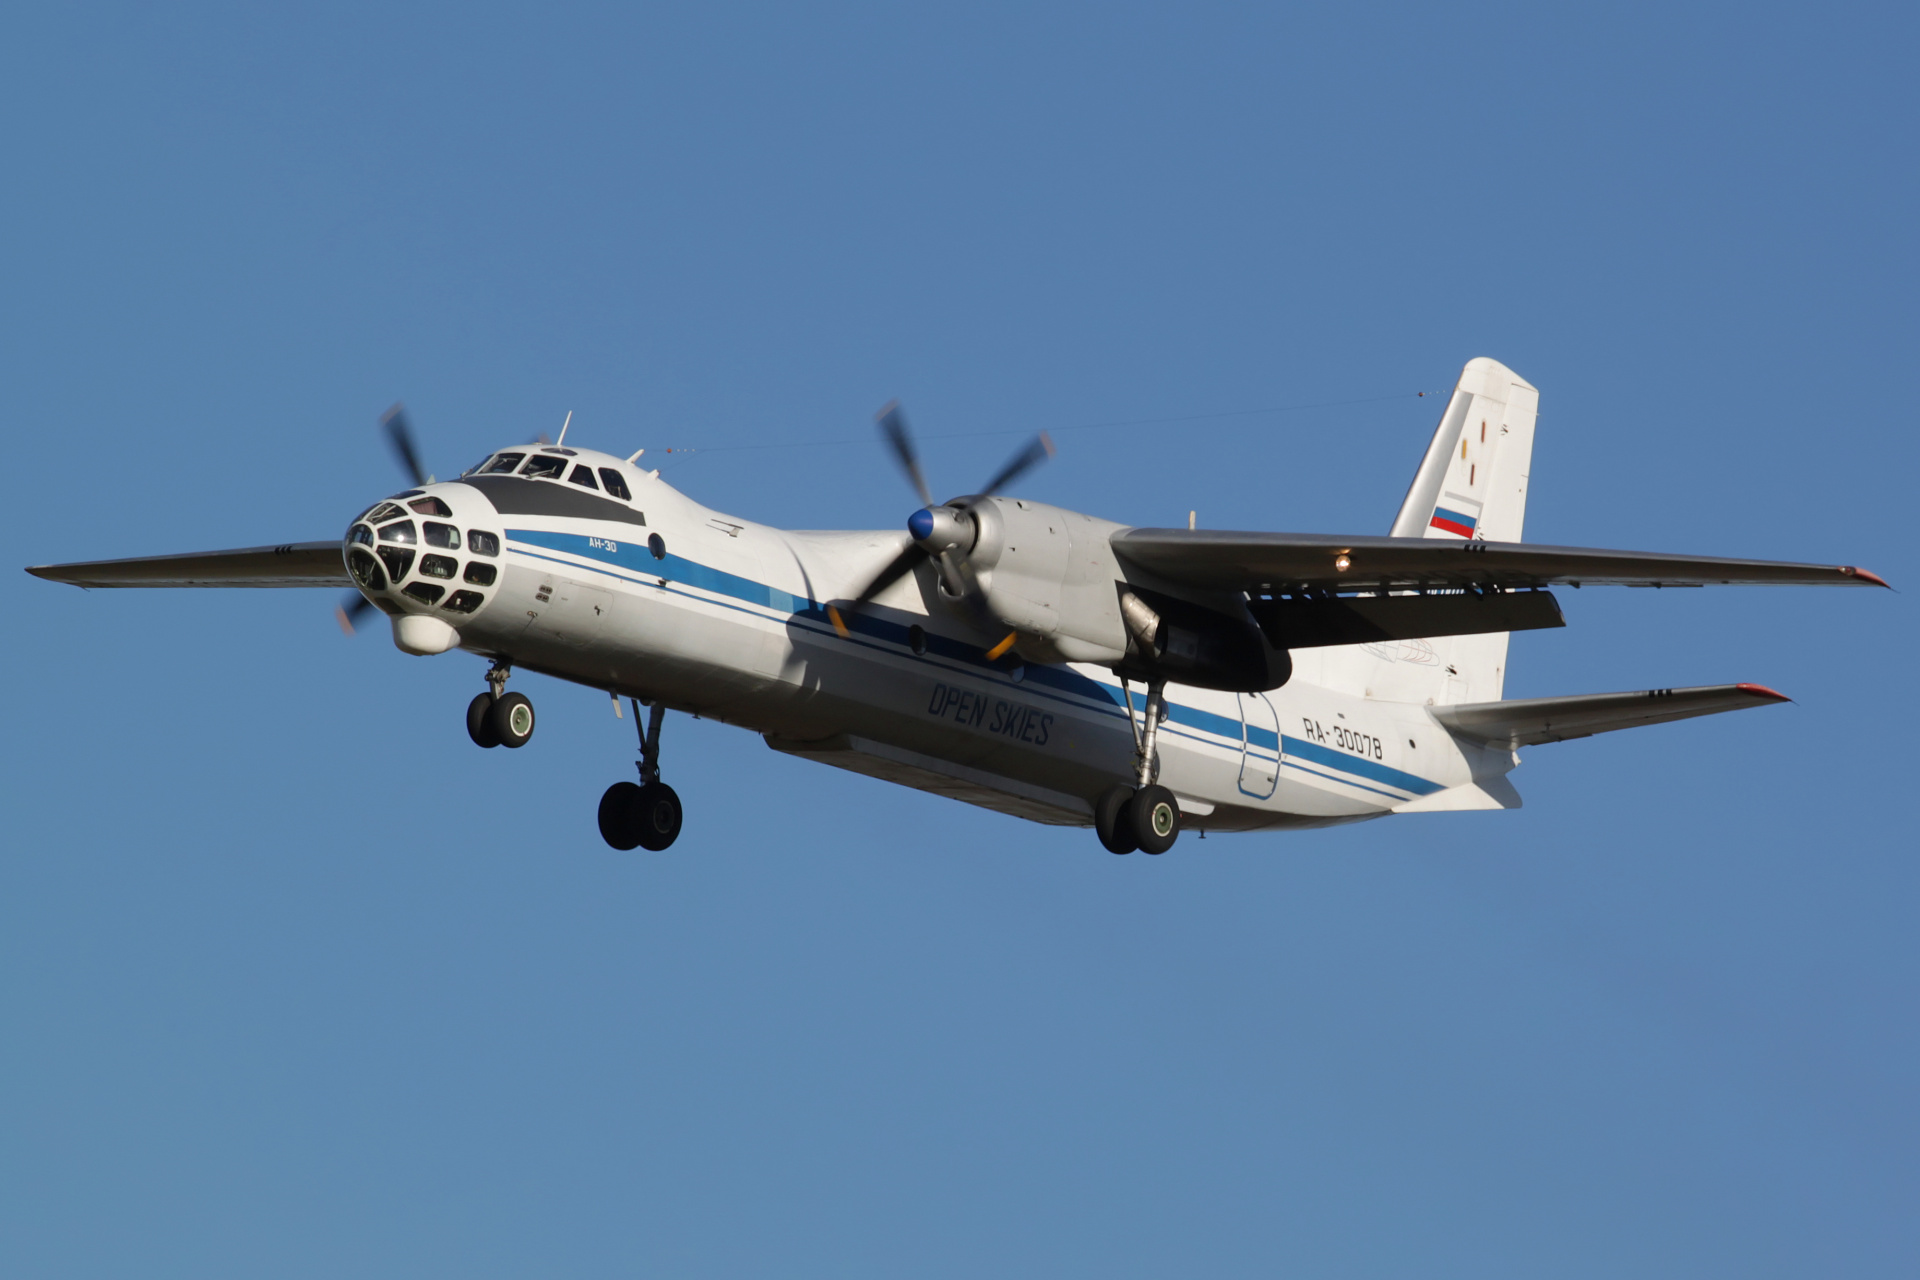 RA-30078 (Samoloty » Spotting na EPWA » Antonow An-30 » Siły Powietrzne Rosji)